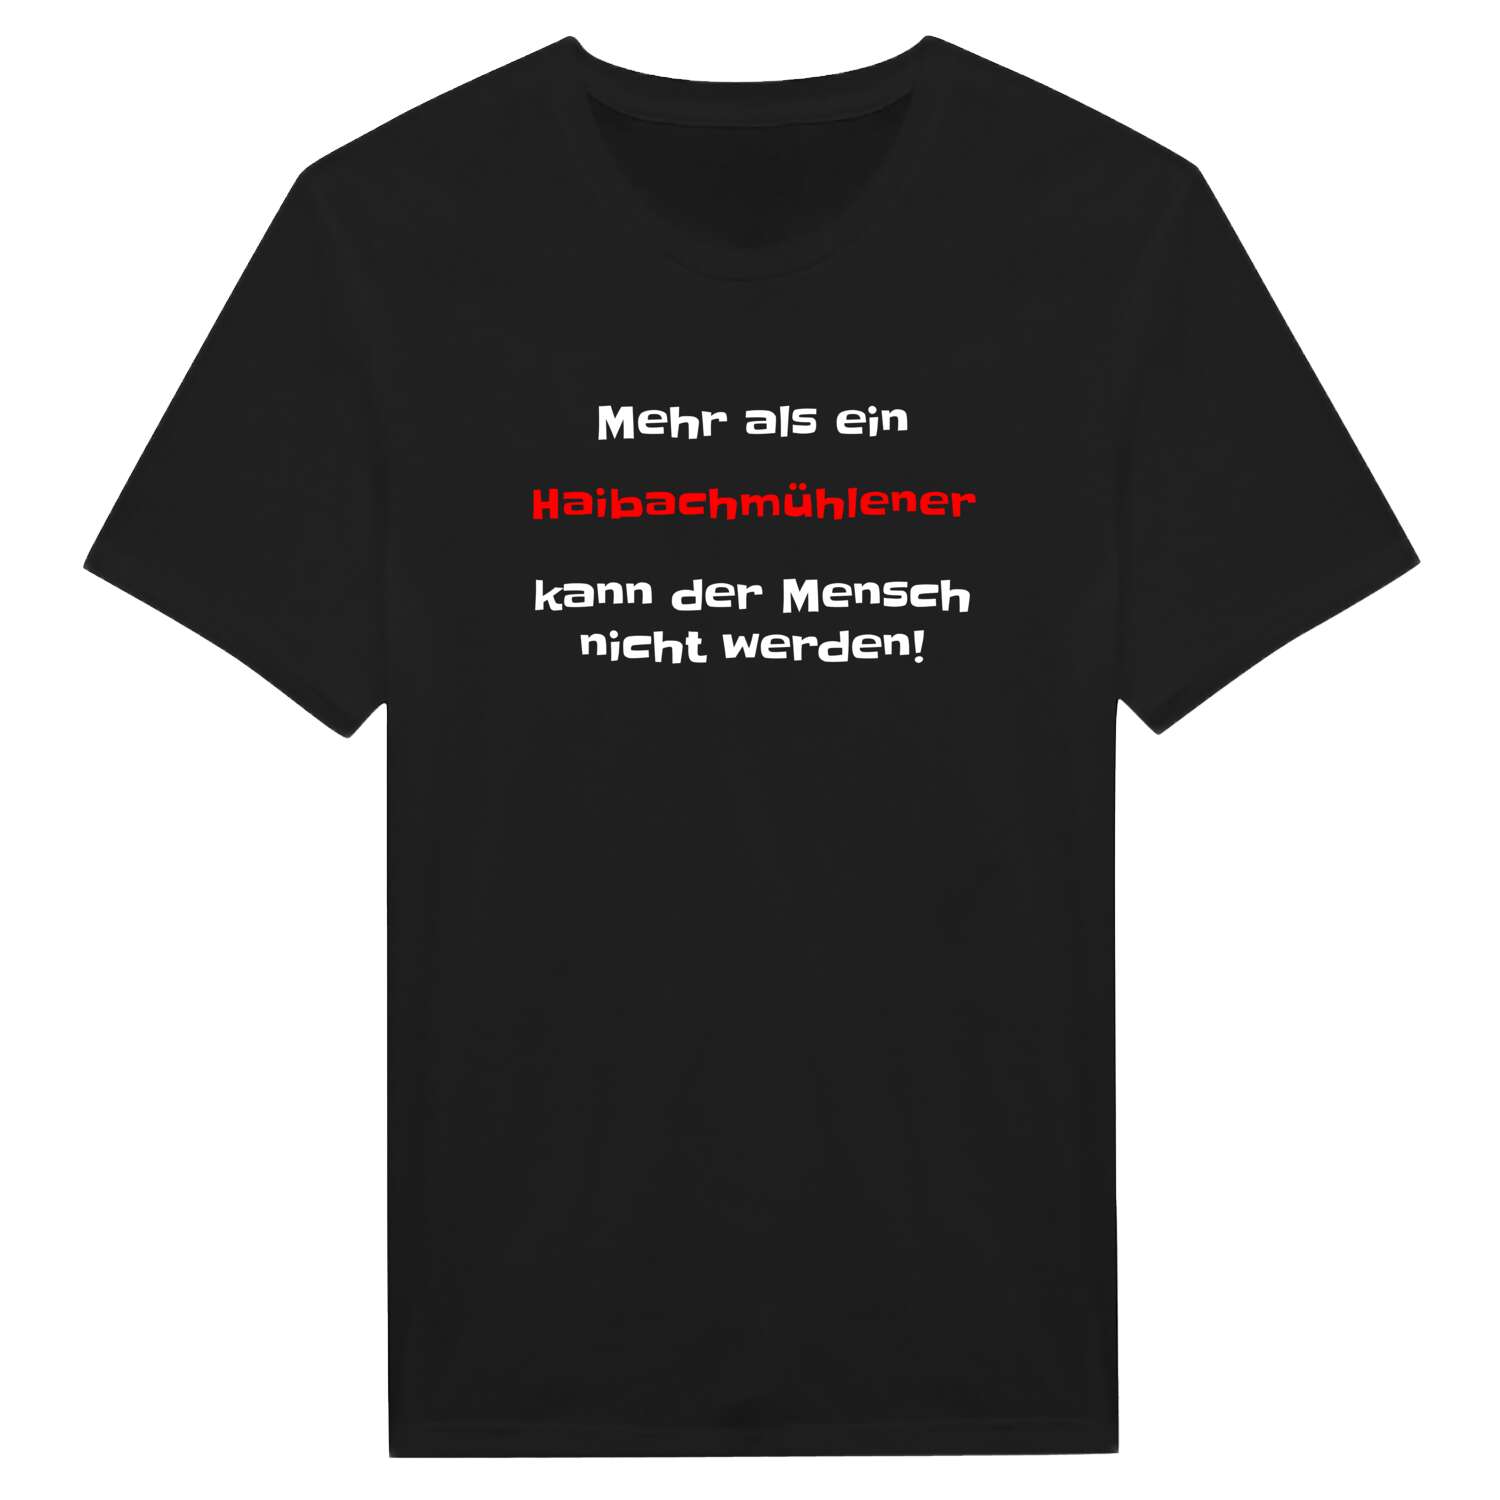 Haibachmühle T-Shirt »Mehr als ein«